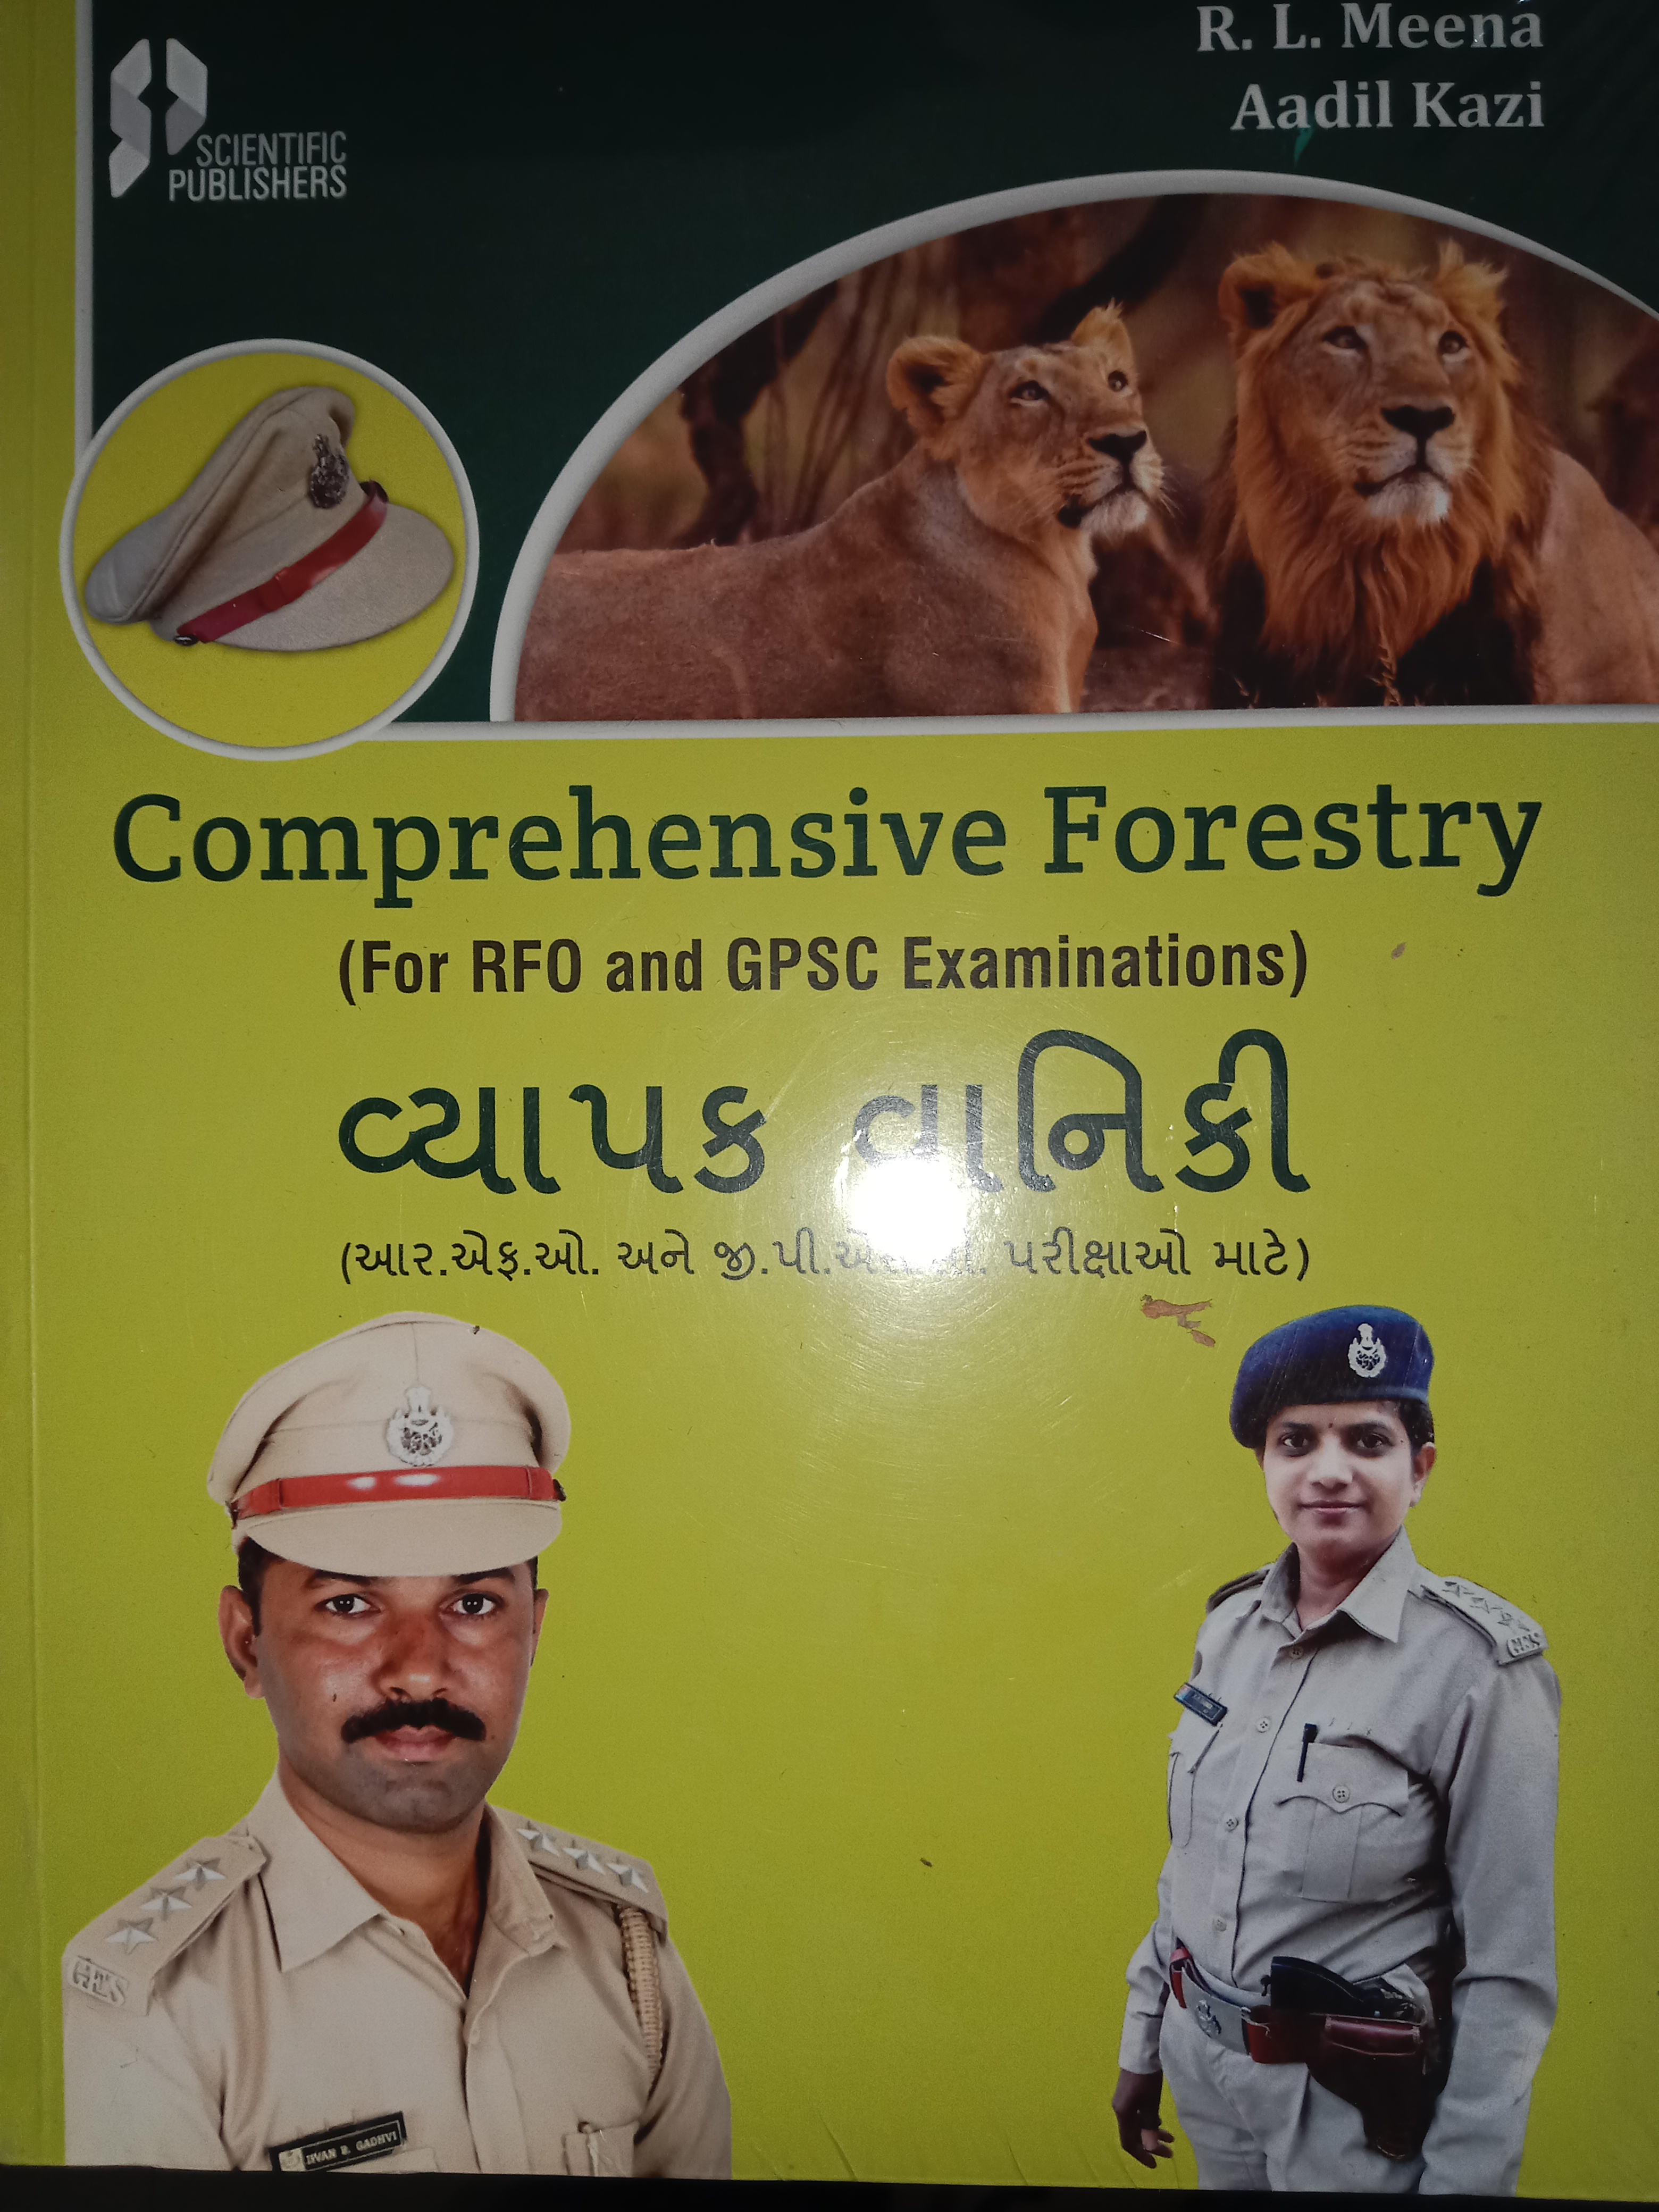 મુખ પૃષ્ઠ । અગ્રમુખ્ય વન સંરક્ષક અને હેડ ઓફ ધી ફોરેસ્ટ ફોર્સ । ગુજરાત સરકાર  । ઇન્ડિયા